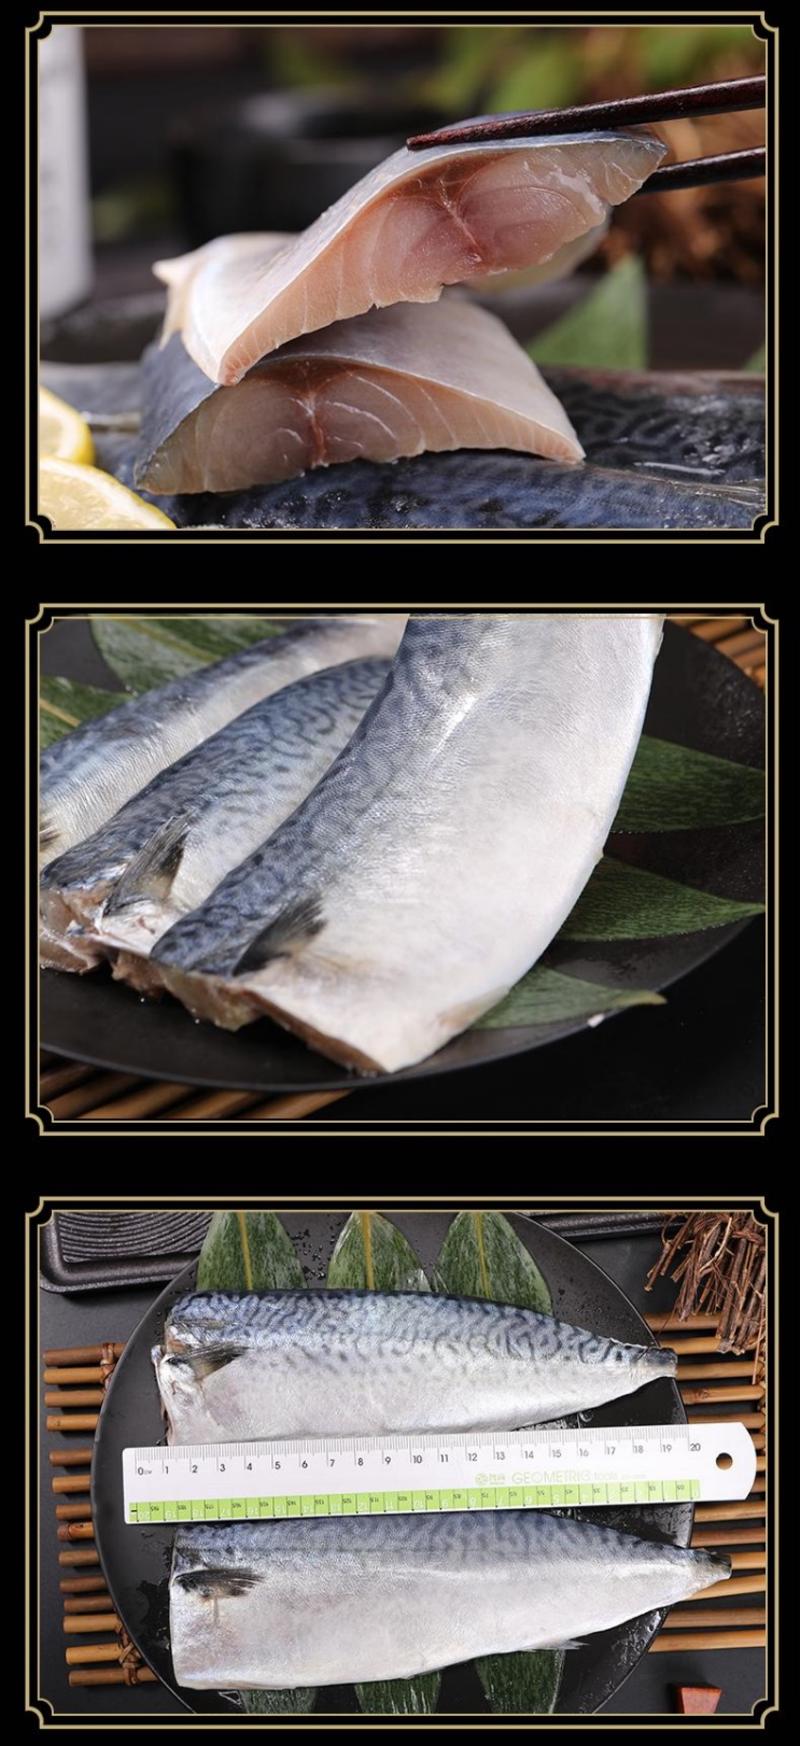 青花鱼鲐鱼片一件批发发顺丰包邮，可试吃可批